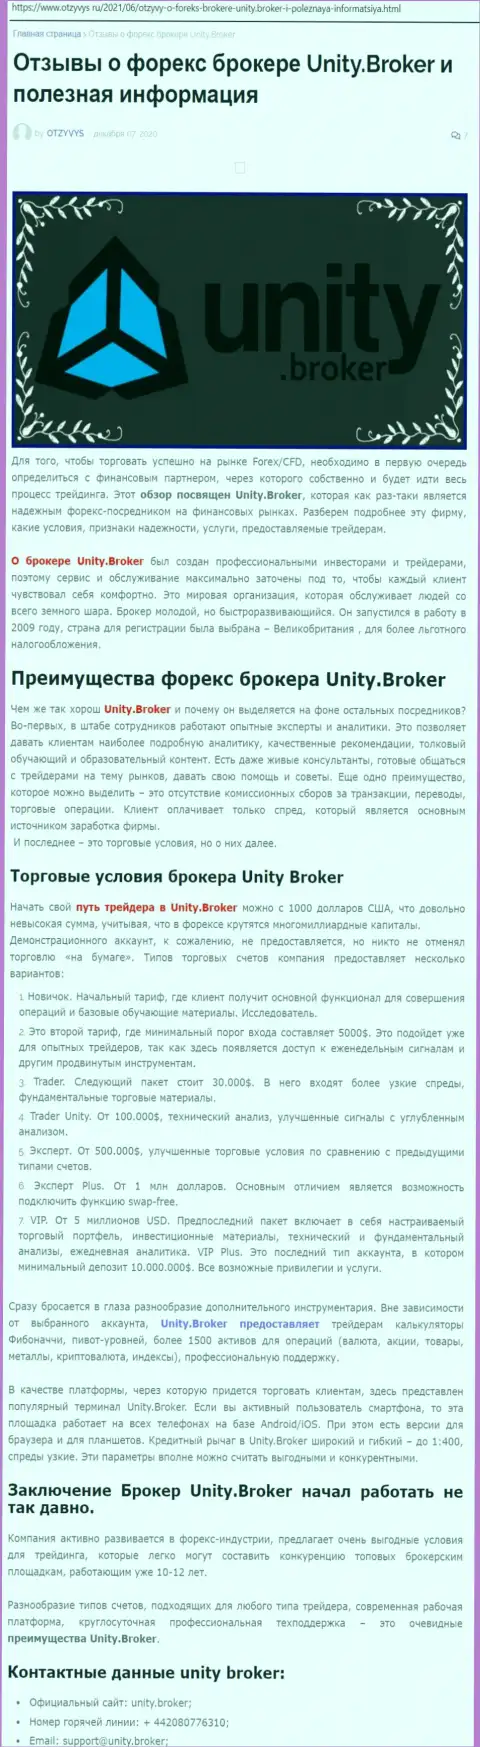 Публикация о форекс-дилинговом центре Unity Broker на сайте otzyvys ru